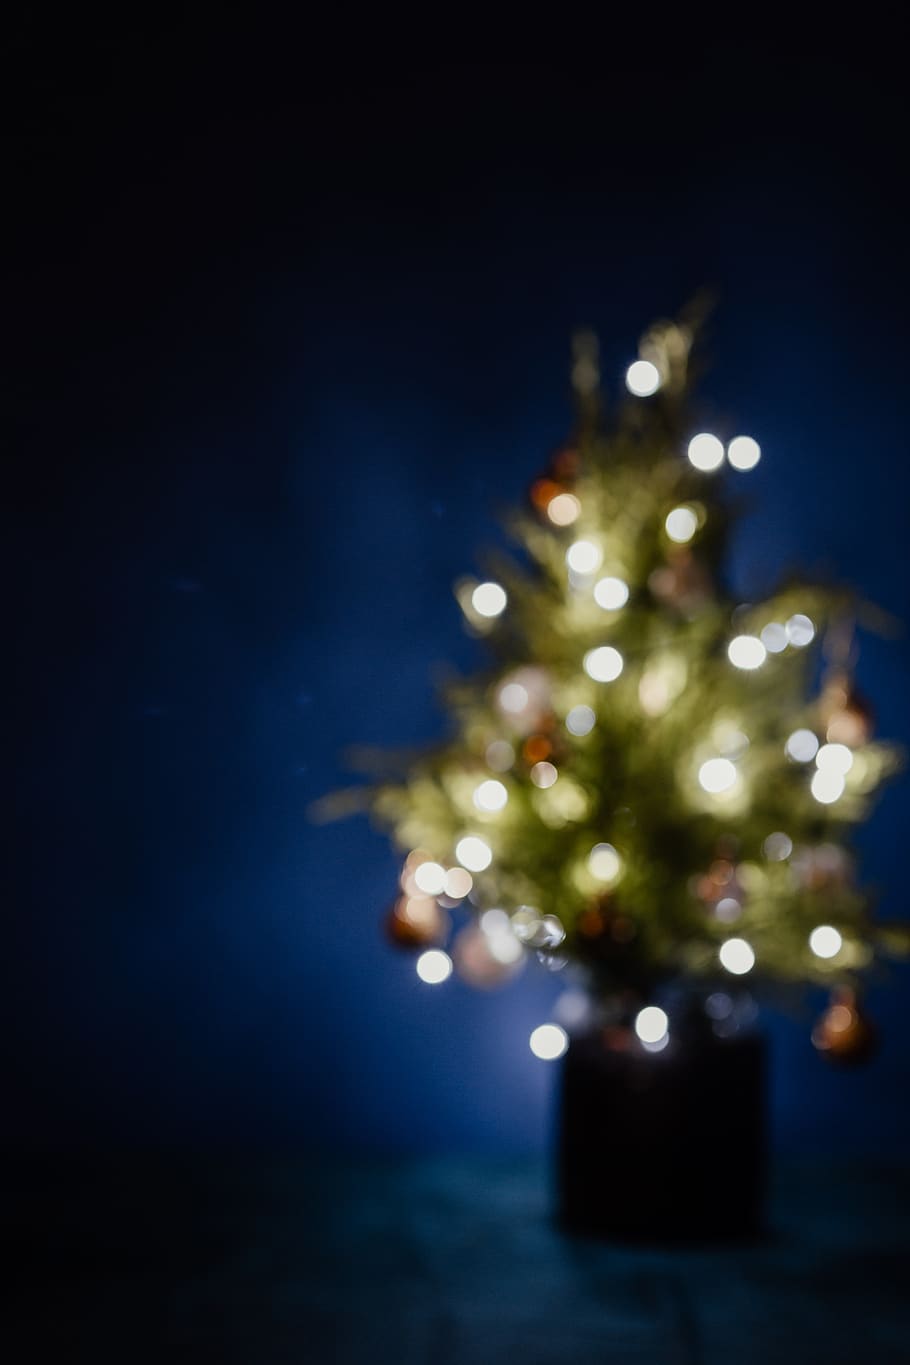 árbol de navidad borrosa, árbol de navidad, borrosa, luces, luces de navidad, espacio de la copia, navidad, árbol, azul marino, azul